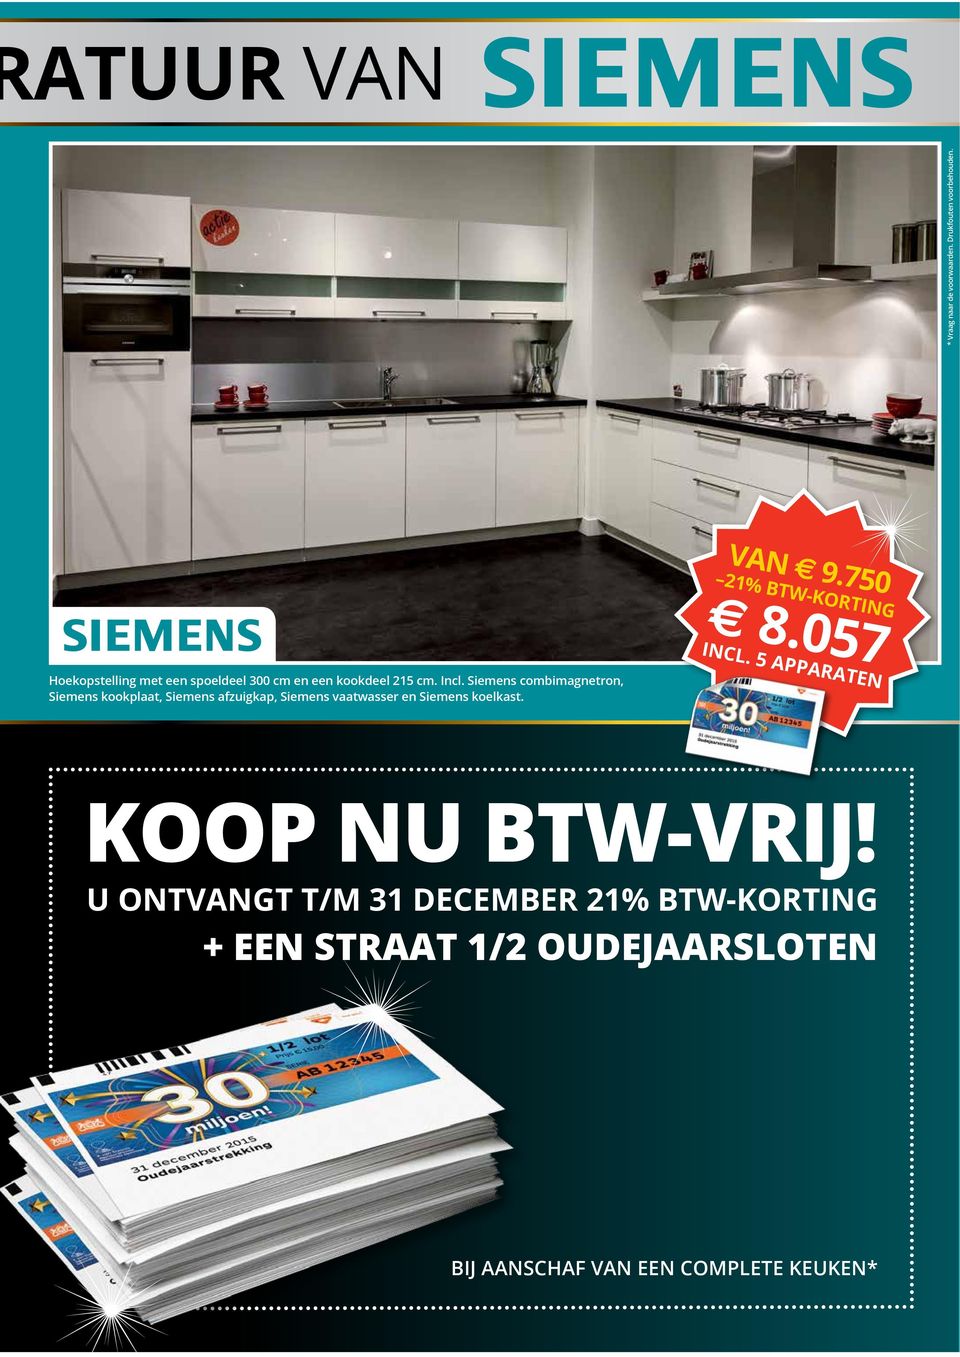 Siemens combimagnetron, Siemens kookplaat, Siemens afzuigkap, Siemens vaatwasser en Siemens